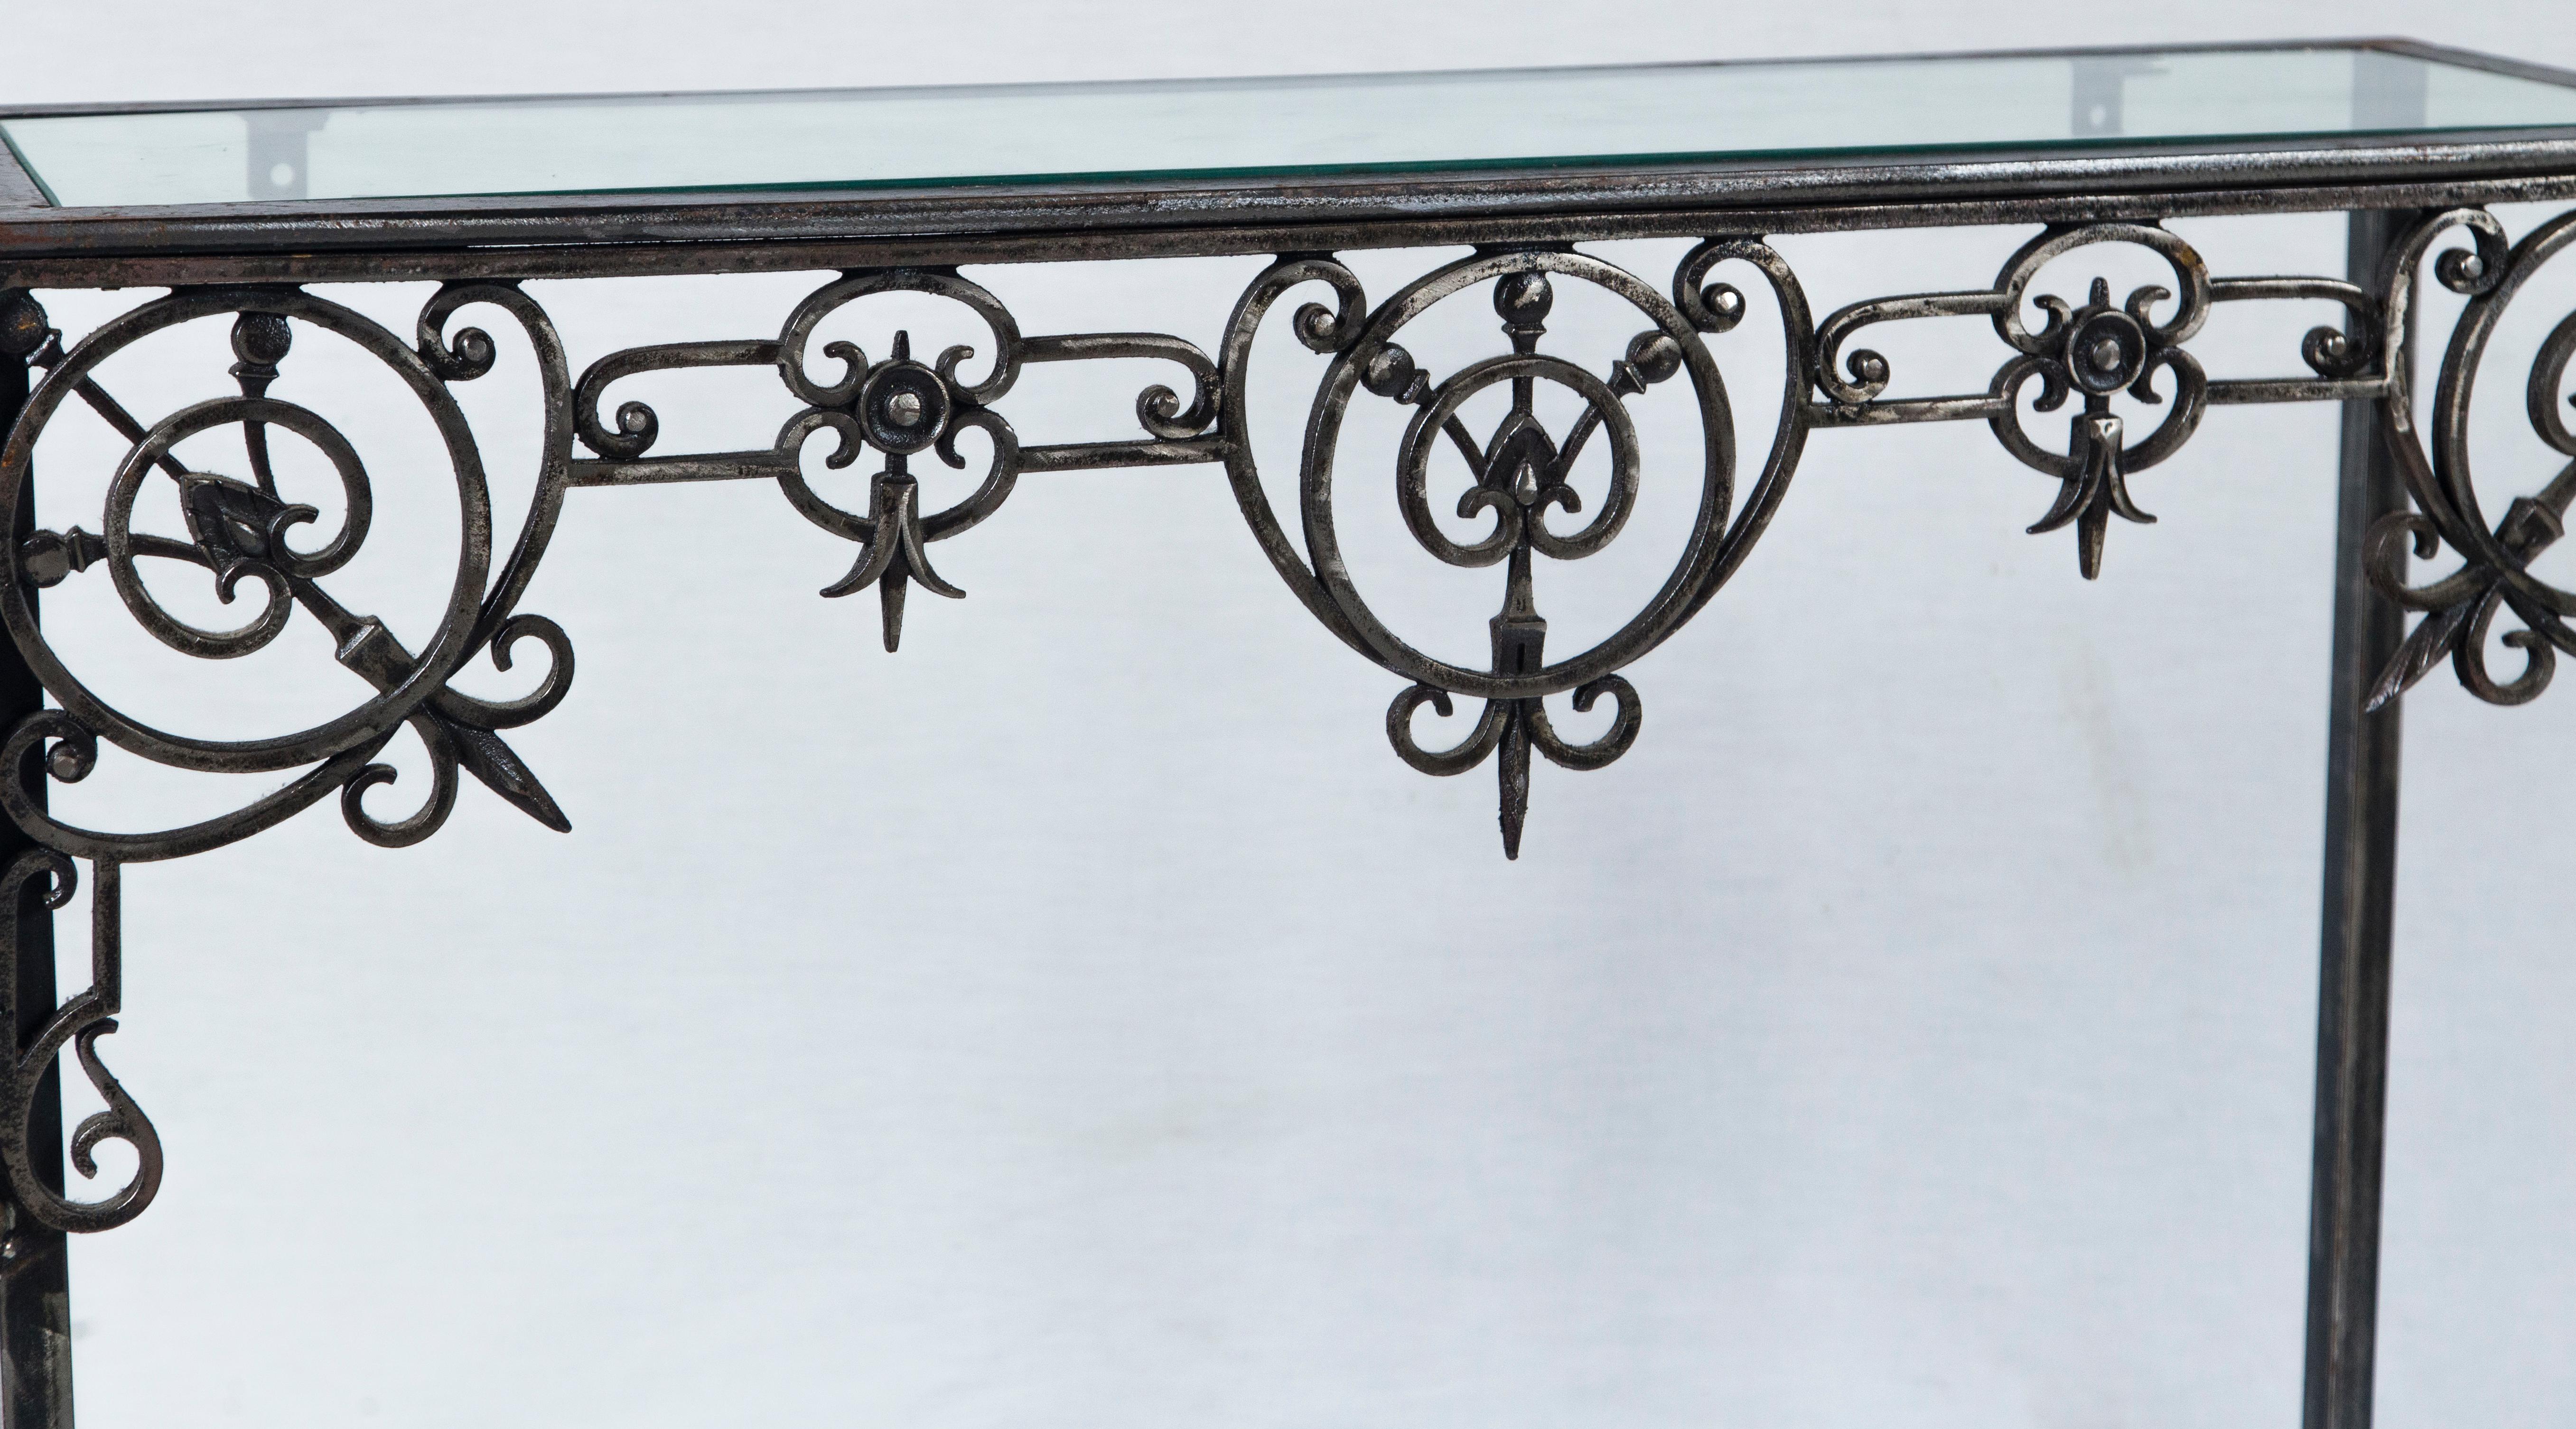 Table console ancienne en fer architectural, France. La table a été conçue autour d'une pièce d'ornement architectural complexe datant de la fin du XIXe siècle. Étagères supérieures et inférieures en verre.